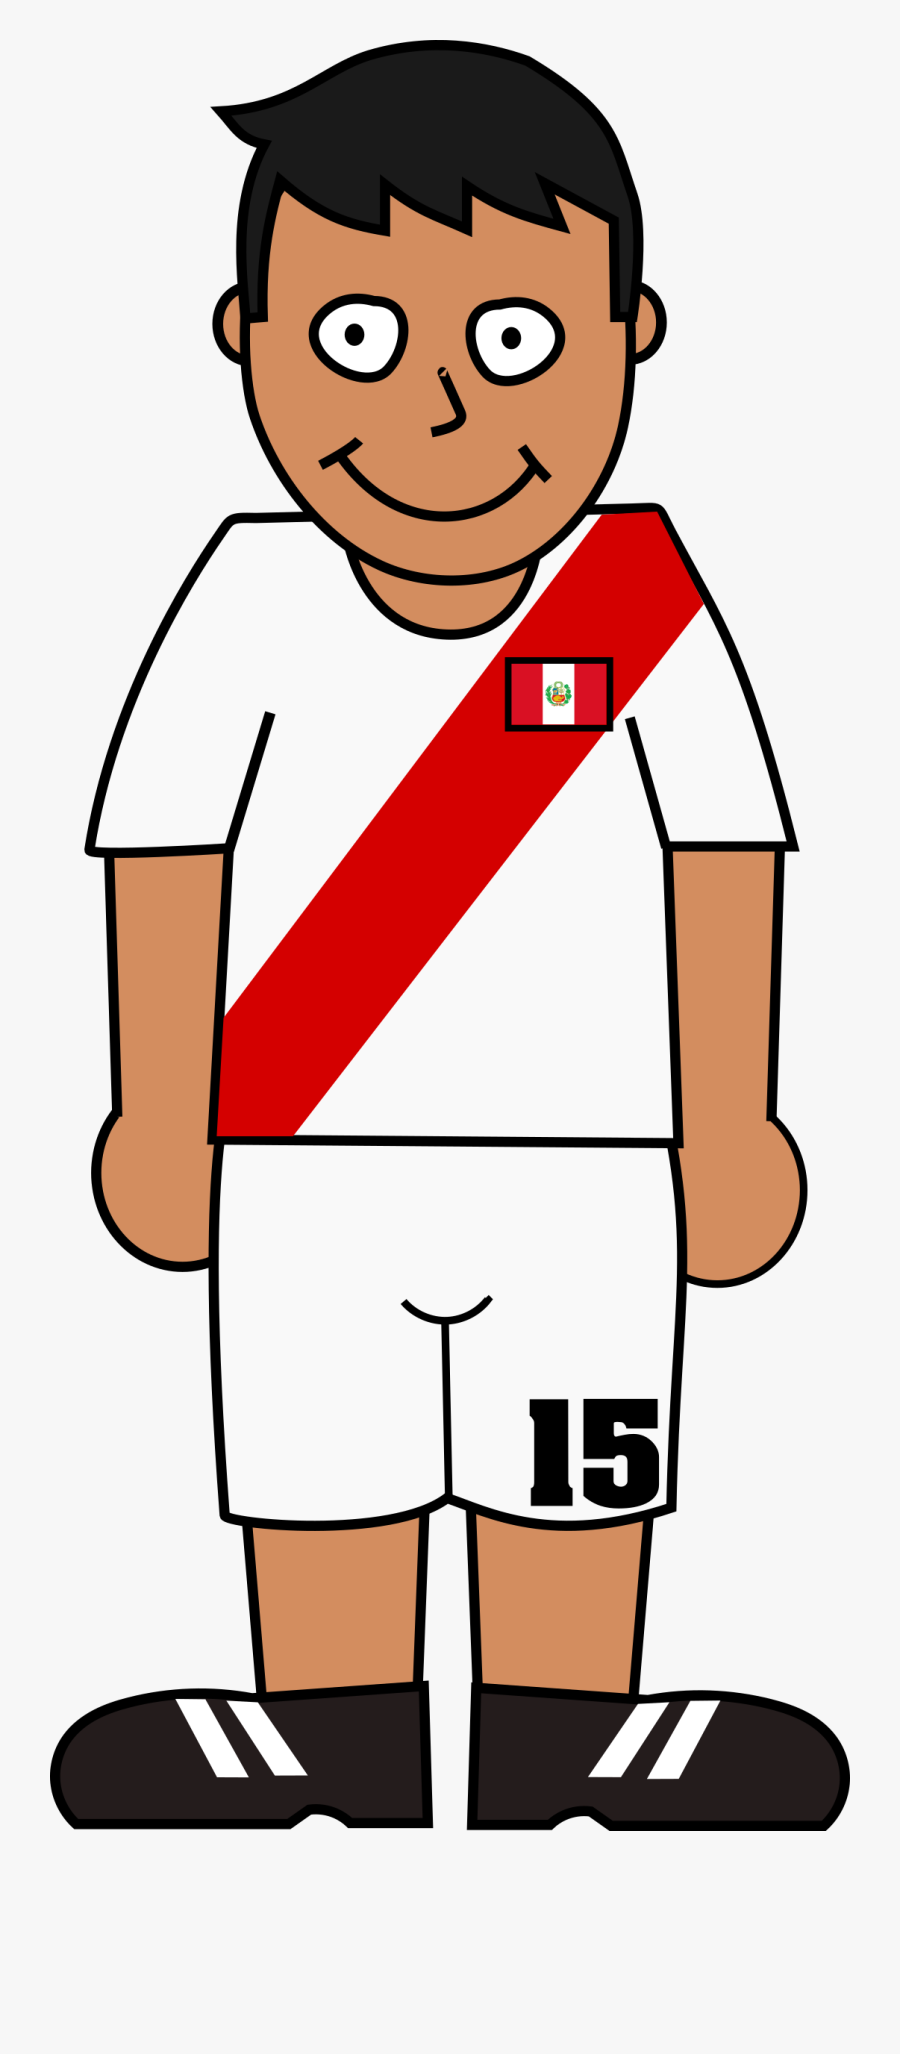 Football Player Peru Transparent - World Cup Soccer Player Clipart Png, Transparent Clipart